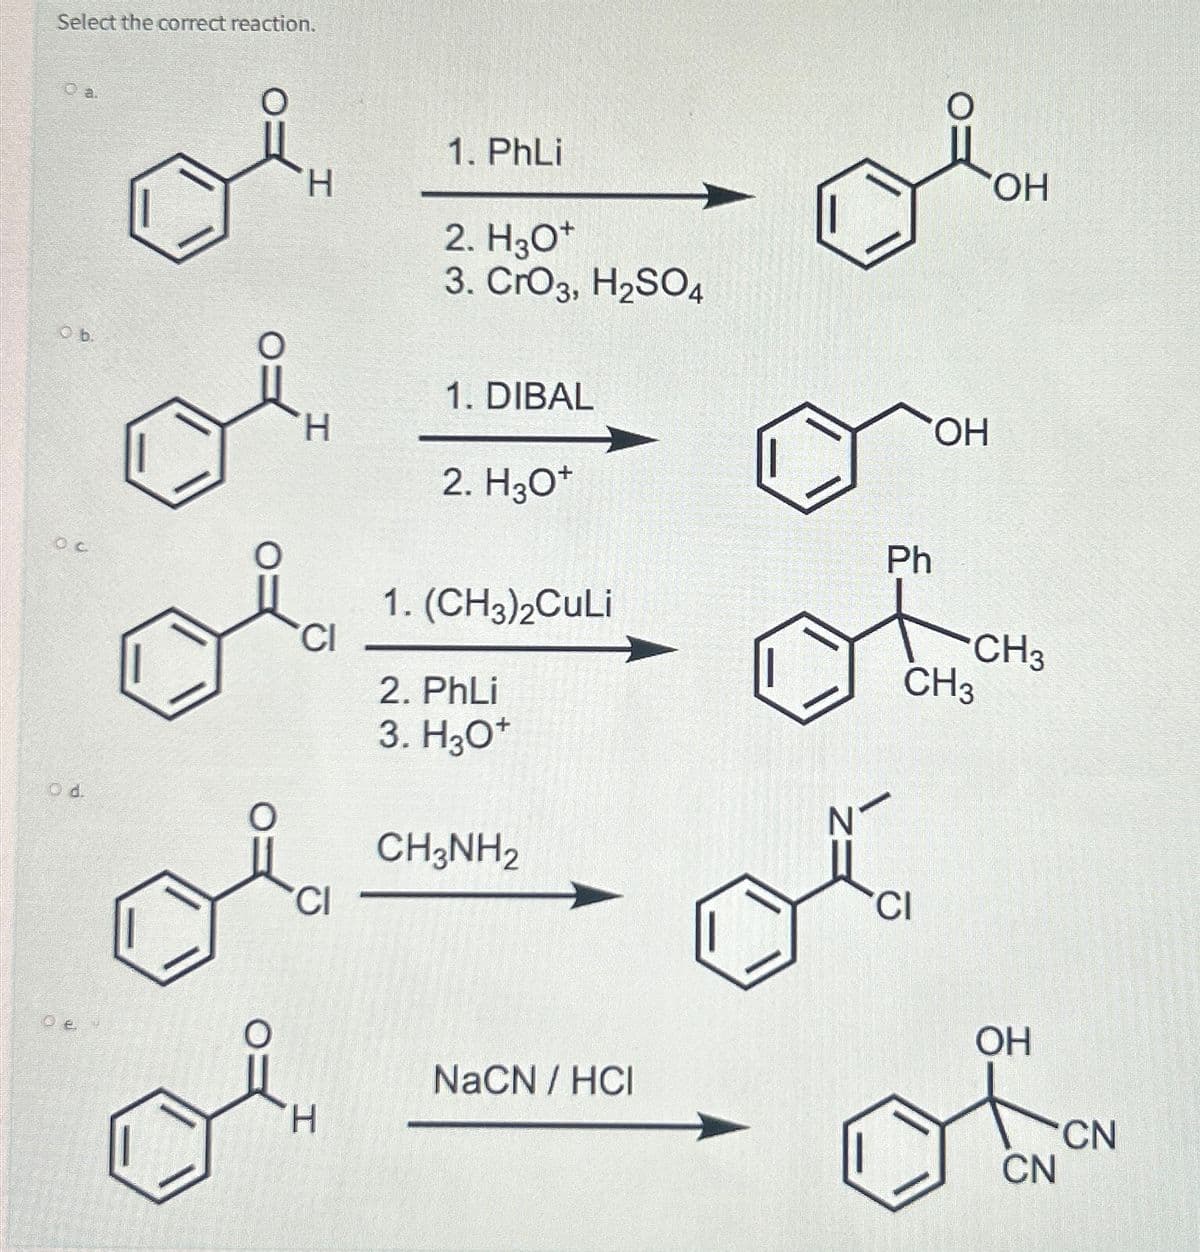 Select the correct reaction.
Ob.
OC
Od.
O
O
H
H
CI
CI
H
1. PhLi
2. H3O+
3. CrO3, H₂SO4
1. DIBAL
2. H3O+
1. (CH3)2CuLi
2. PhLi
3. H3O+
CH3NH2
NaCN / HCI
Ph
OH
CI
CH3
OH
CH3
OH
CN
CN